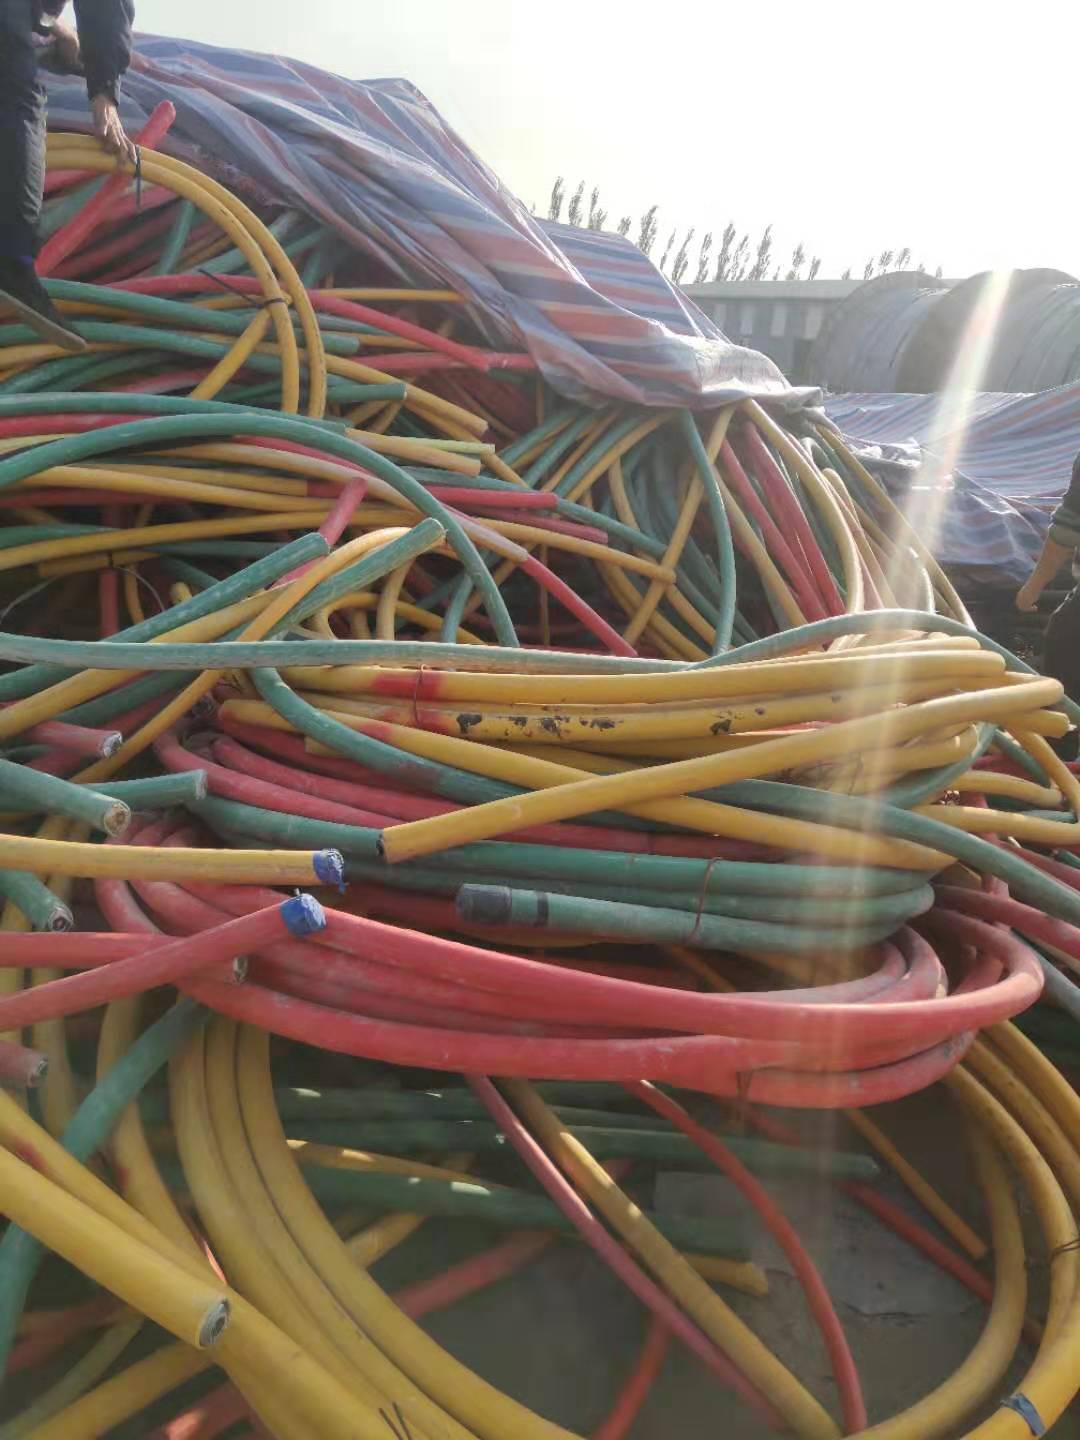 栖霞电线电缆回收废旧电缆线回收价格栖霞电线电缆回收